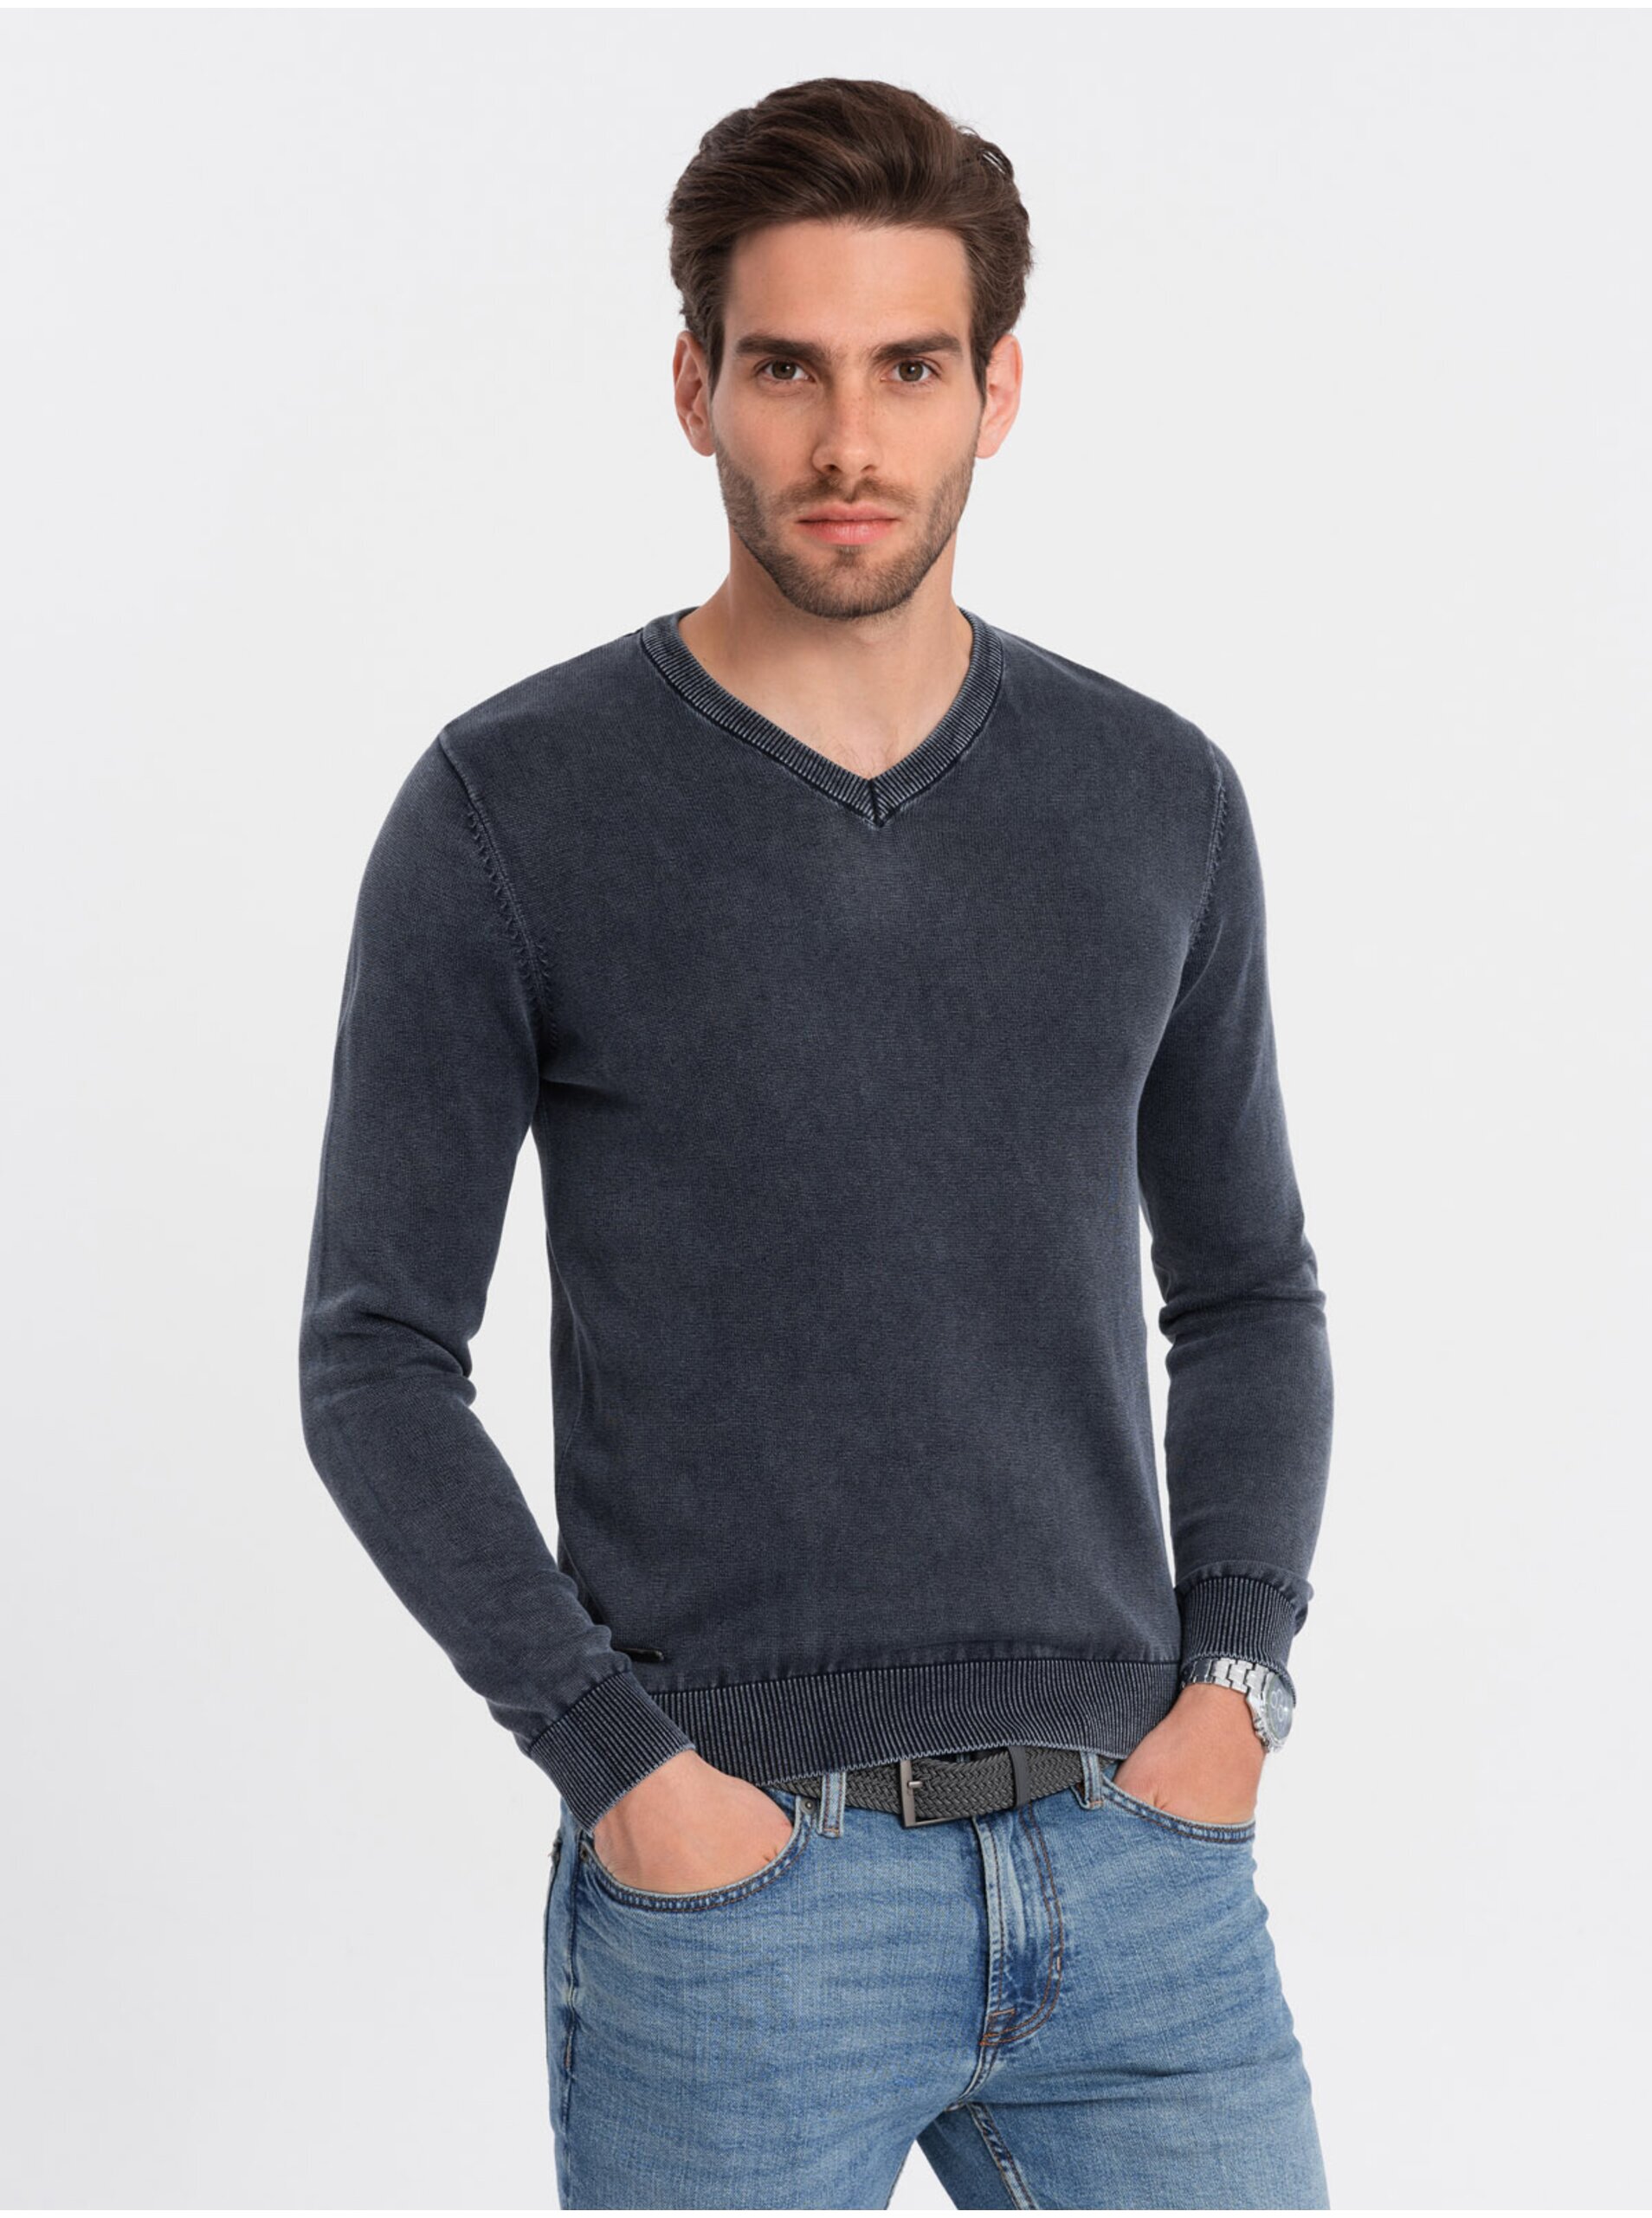 Lacno Tmavomodrý pánsky basic sveter s véčkovým výstrihom Ombre Clothing